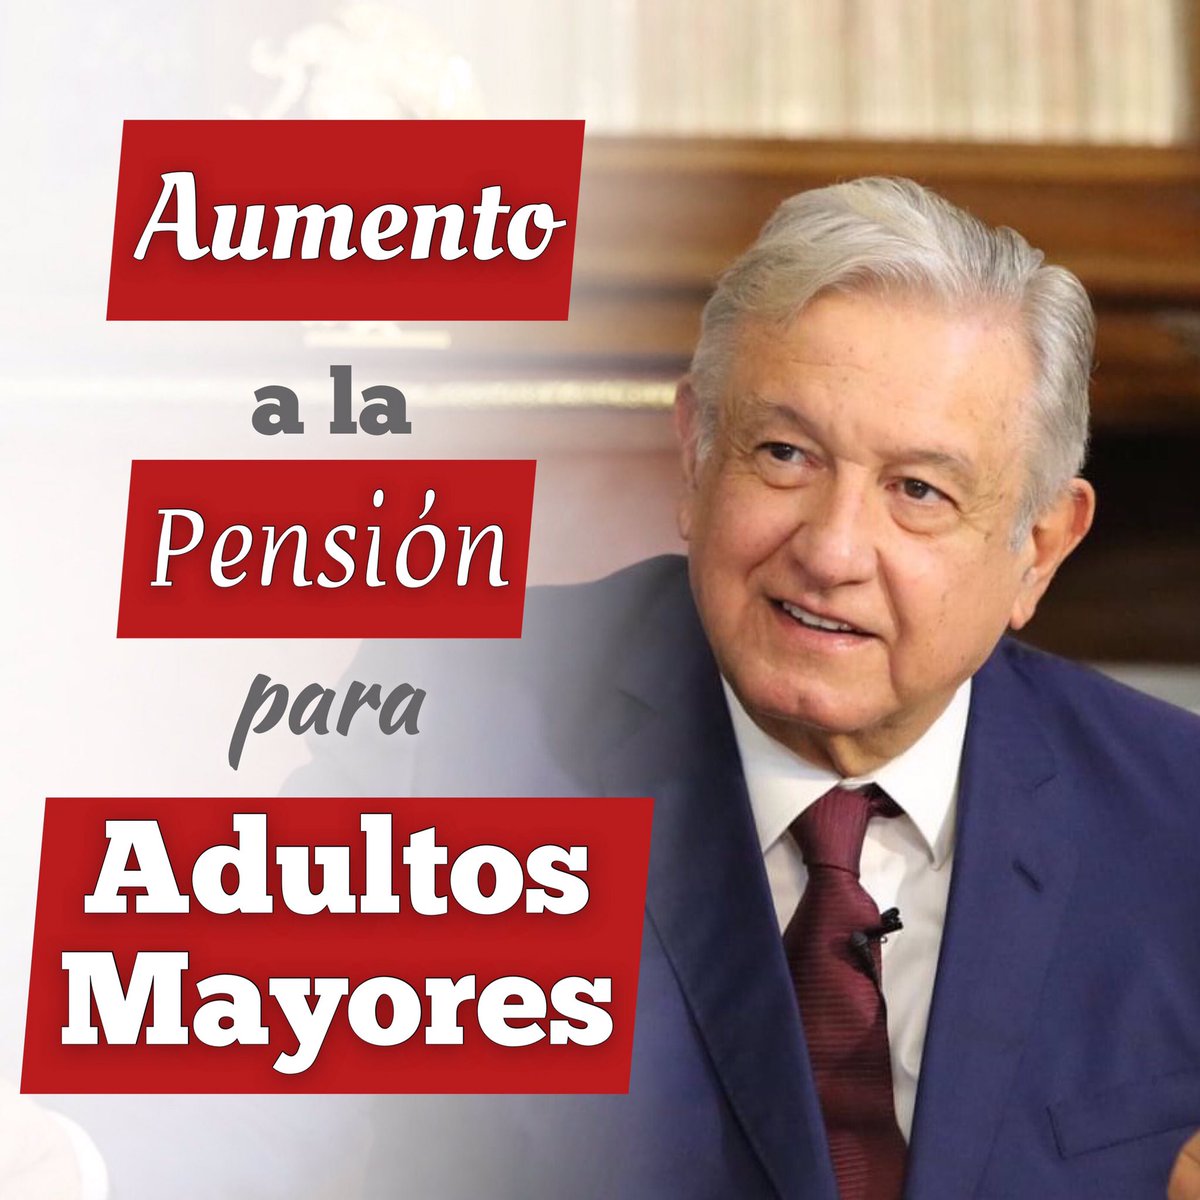 #AMLO anunció desde Oaxaca que la pensión para adultos mayores incrementará año con año,
además de que se entregará a partir de los 65 años. 👴🏻👵🏻

Tenemos un presidente que se preocupa por el pueblo. #La4TCumple 🙋🏻‍♂️